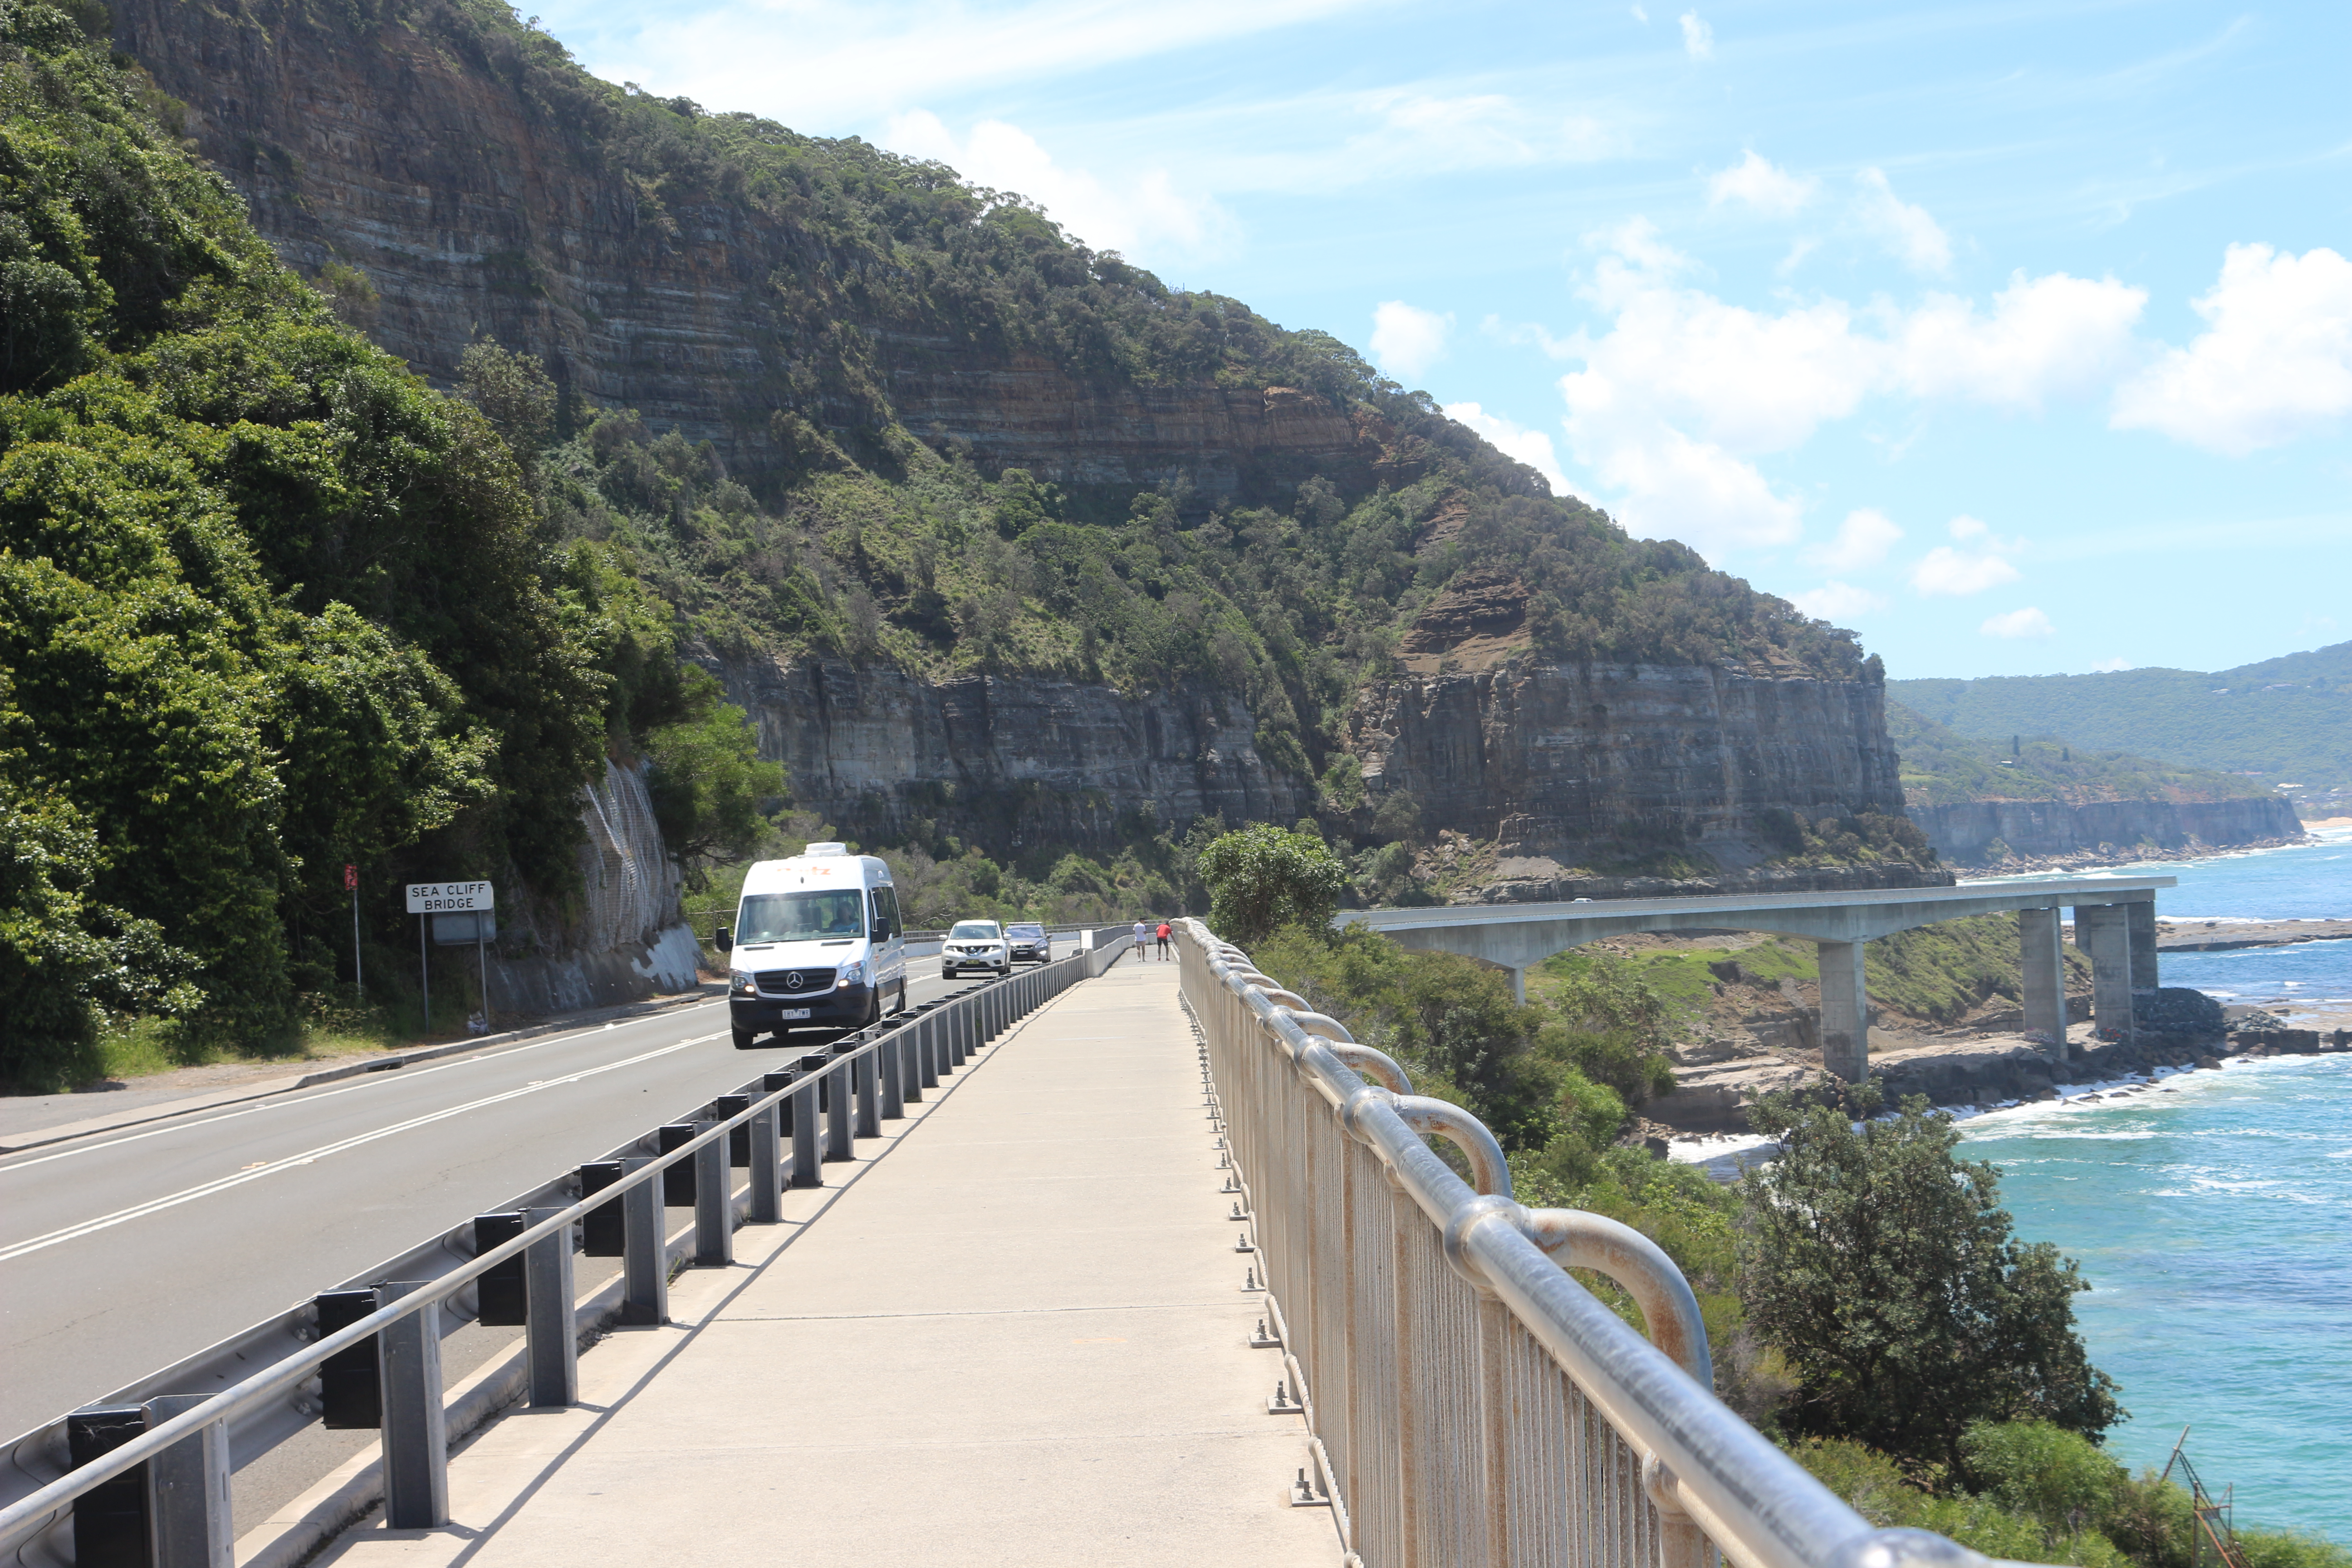 Cars drive along the Sea Cliff Bridge along the Grand Pacific Drive in Australia.